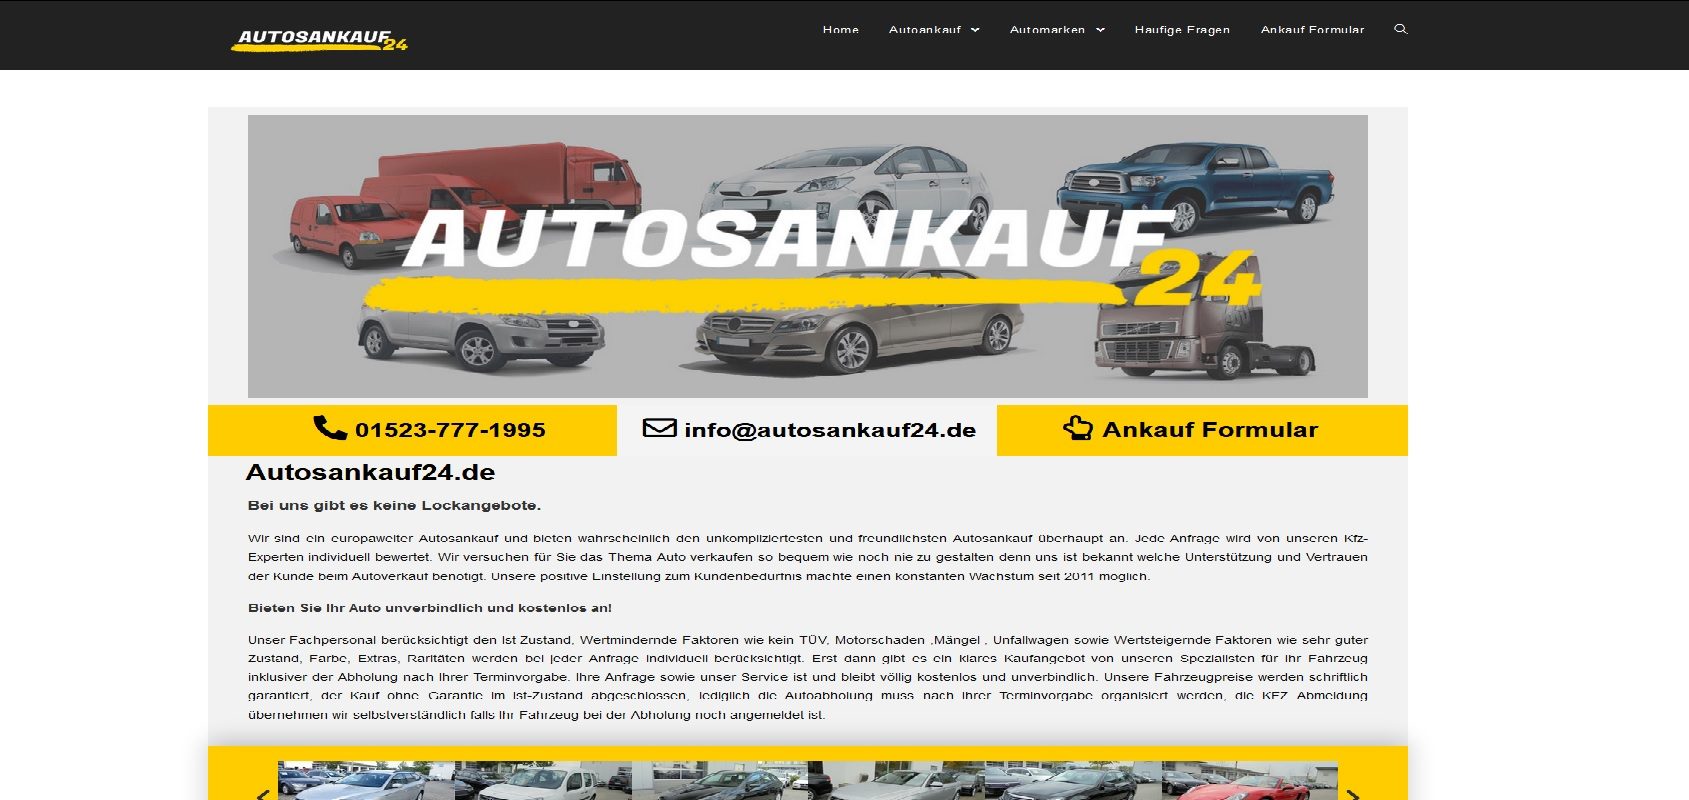 Autosankauf24.de - KFZ Ankauf